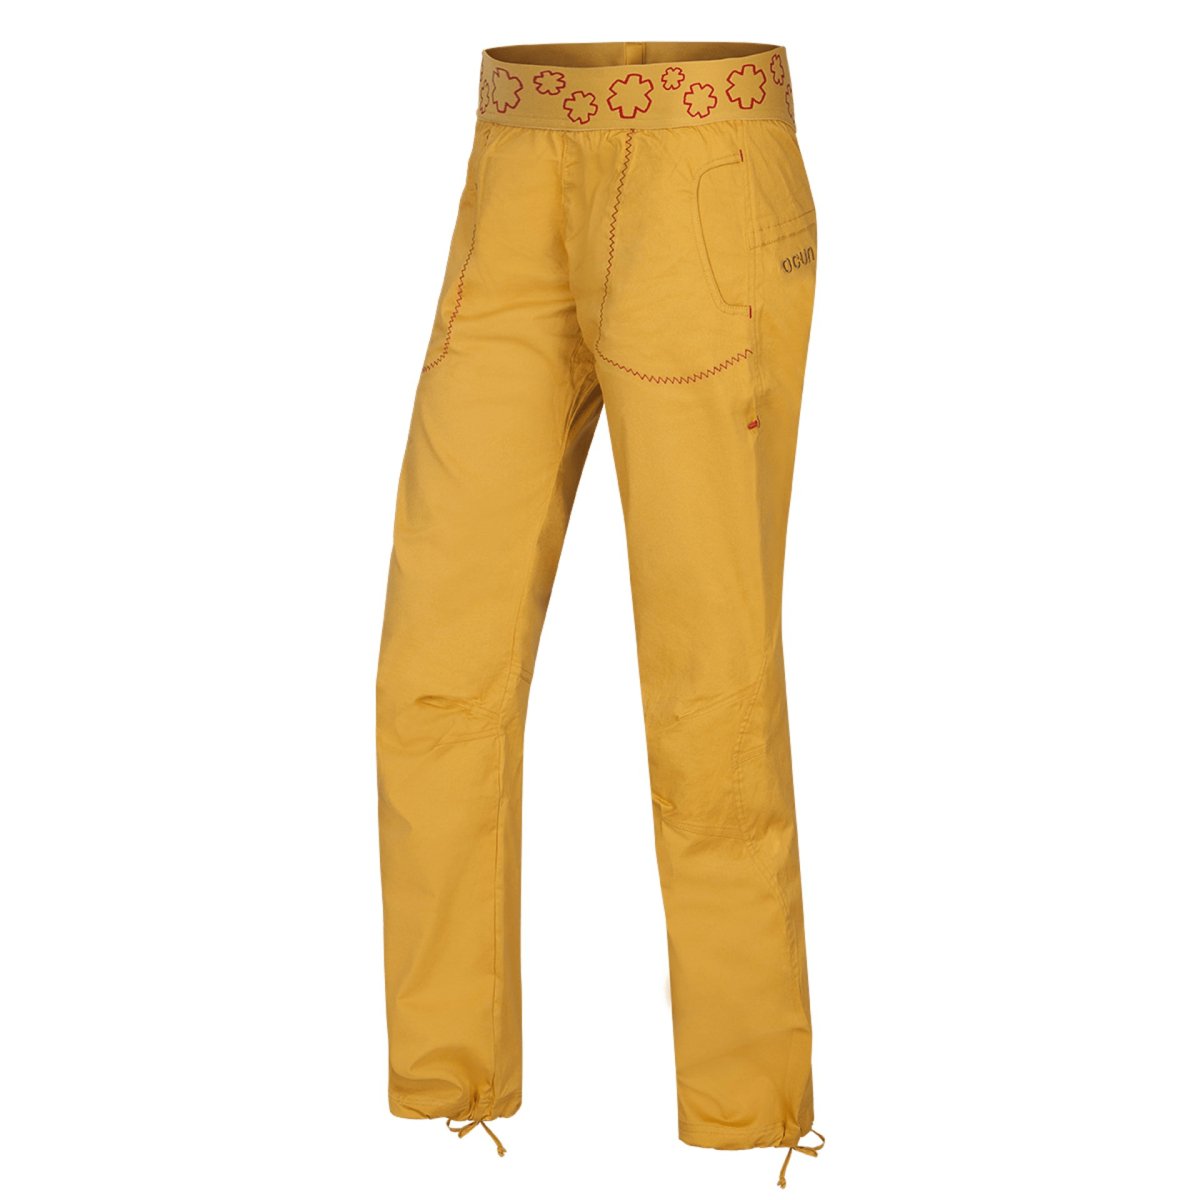 Ocun Pantera Pants - SM - Golden Yellow - The Climbing Shop